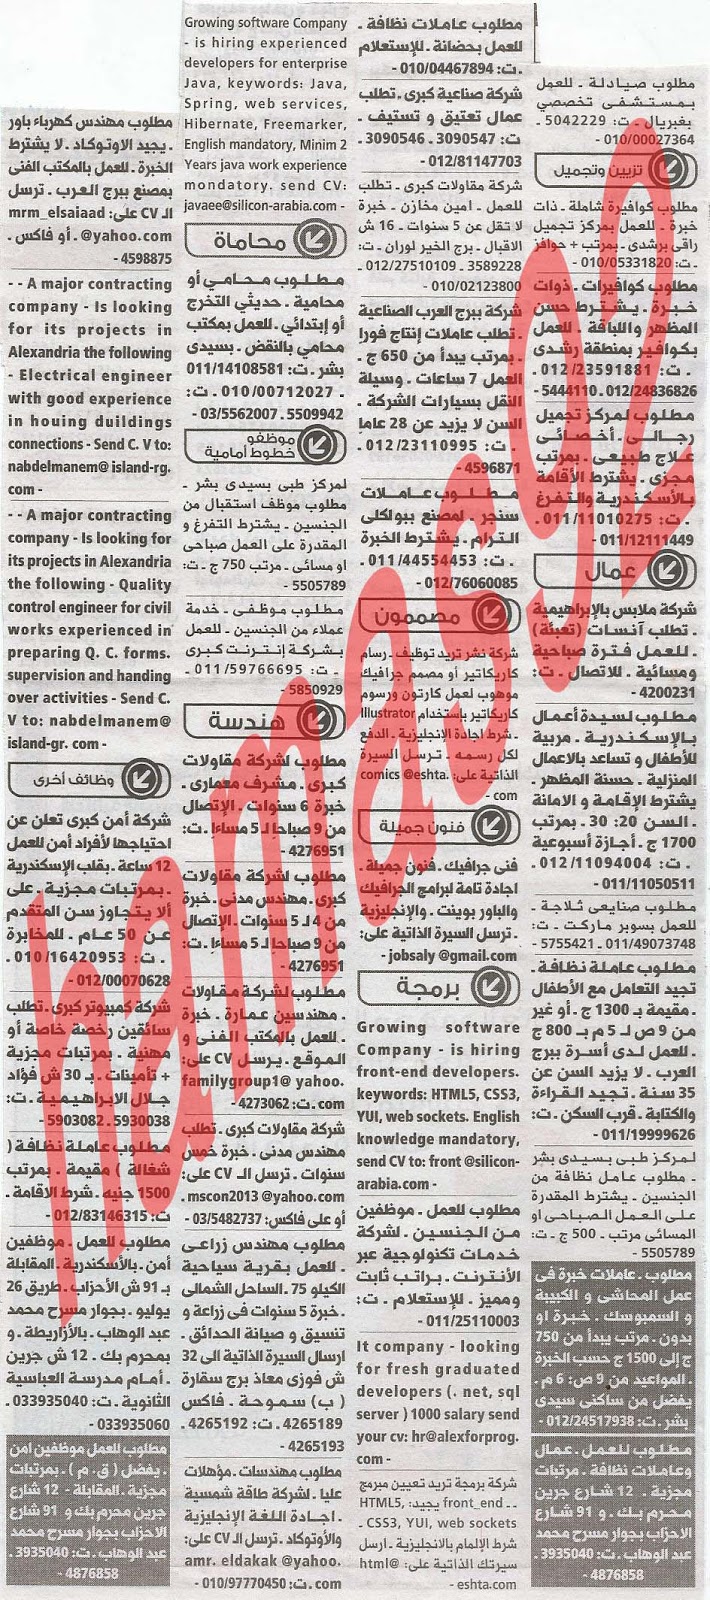 وظائف خالية فى جريدة الوسيط الاسكندرية الاثنين 22-07-2013 %D9%88+%D8%B3+%D8%B3+5